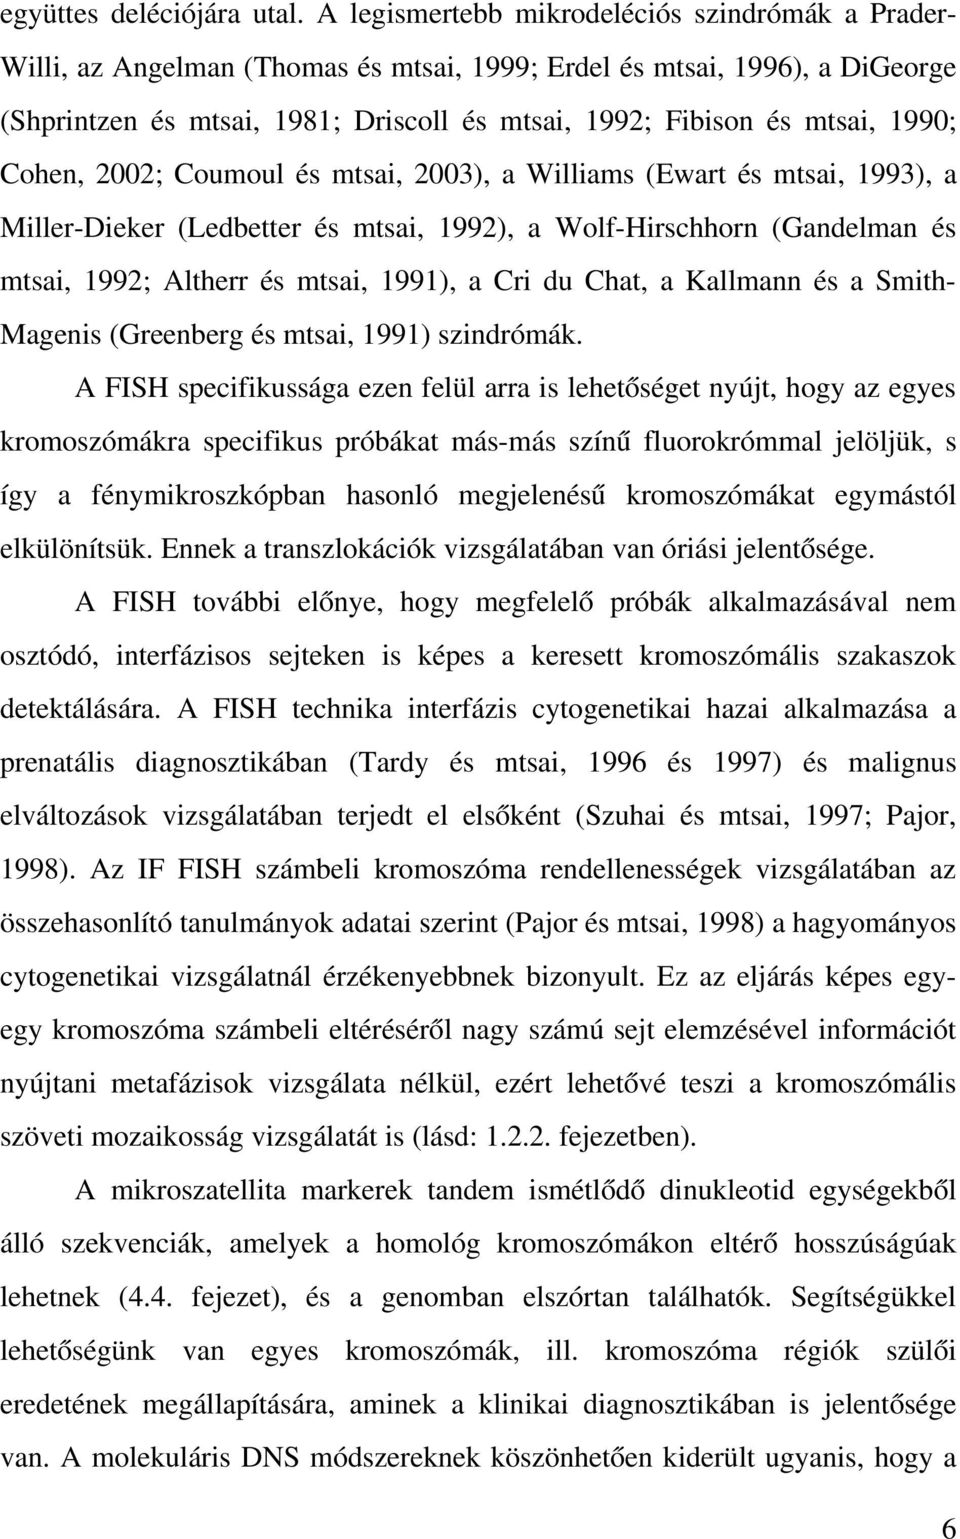 1990; Cohen, 2002; Coumoul és mtsai, 2003), a Williams (Ewart és mtsai, 1993), a Miller Dieker (Ledbetter és mtsai, 1992), a Wolf Hirschhorn (Gandelman és mtsai, 1992; Altherr és mtsai, 1991), a Cri